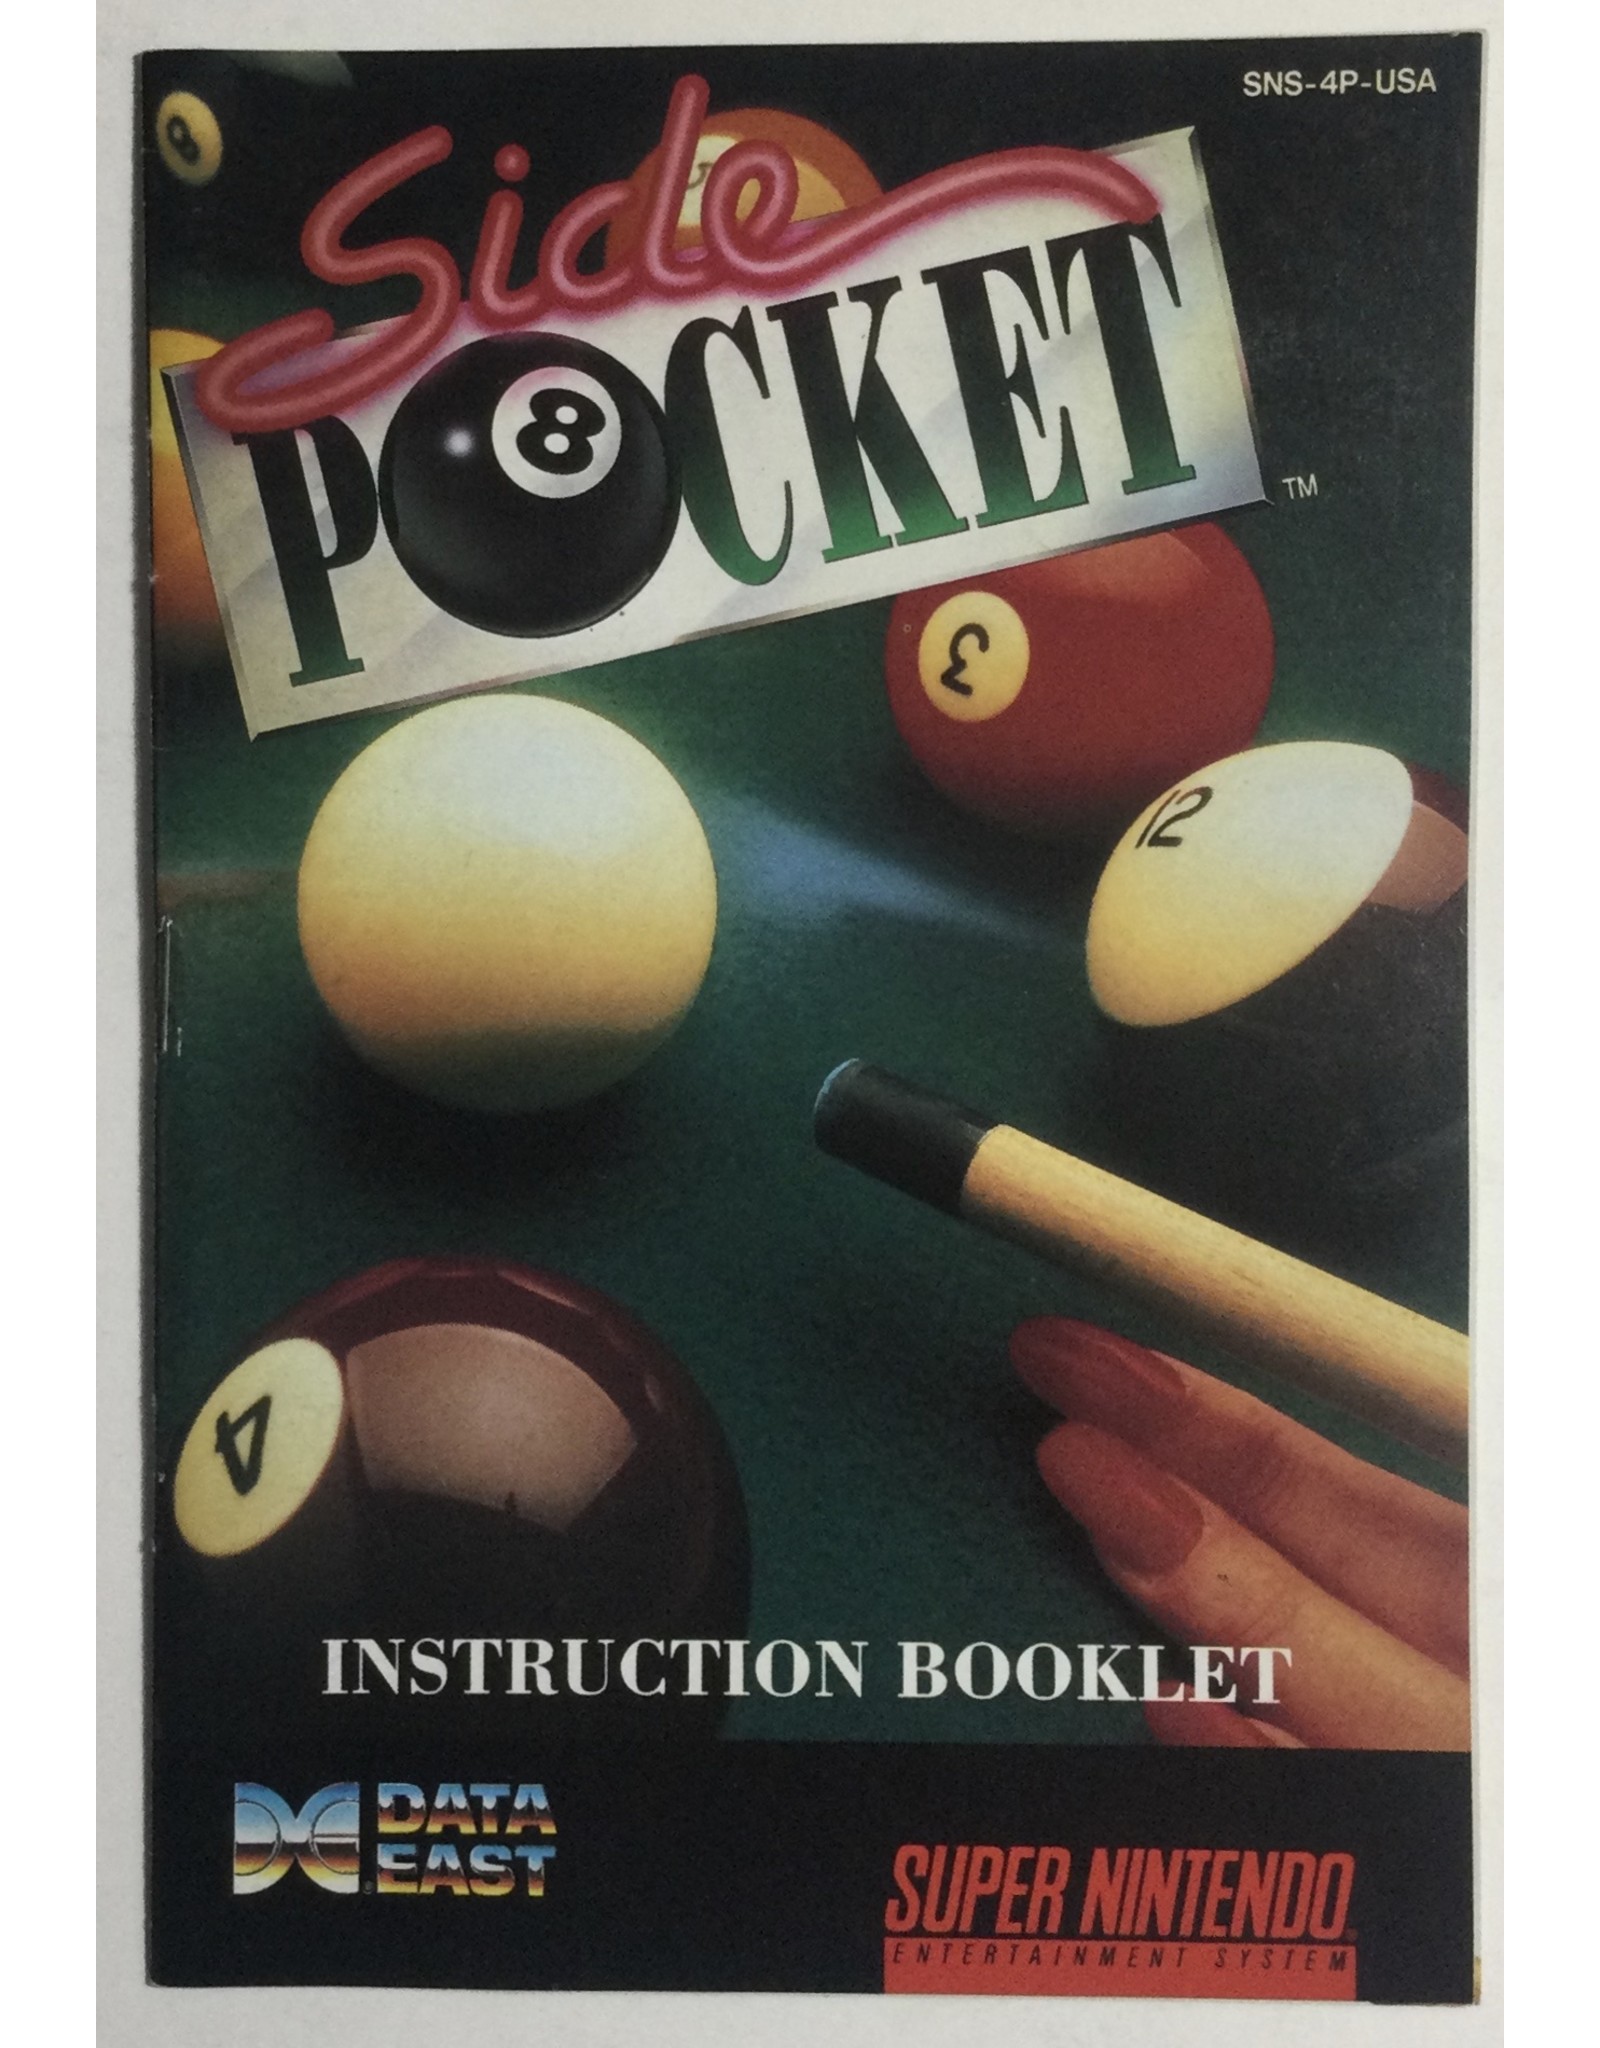 Side Pocket, Nintendo